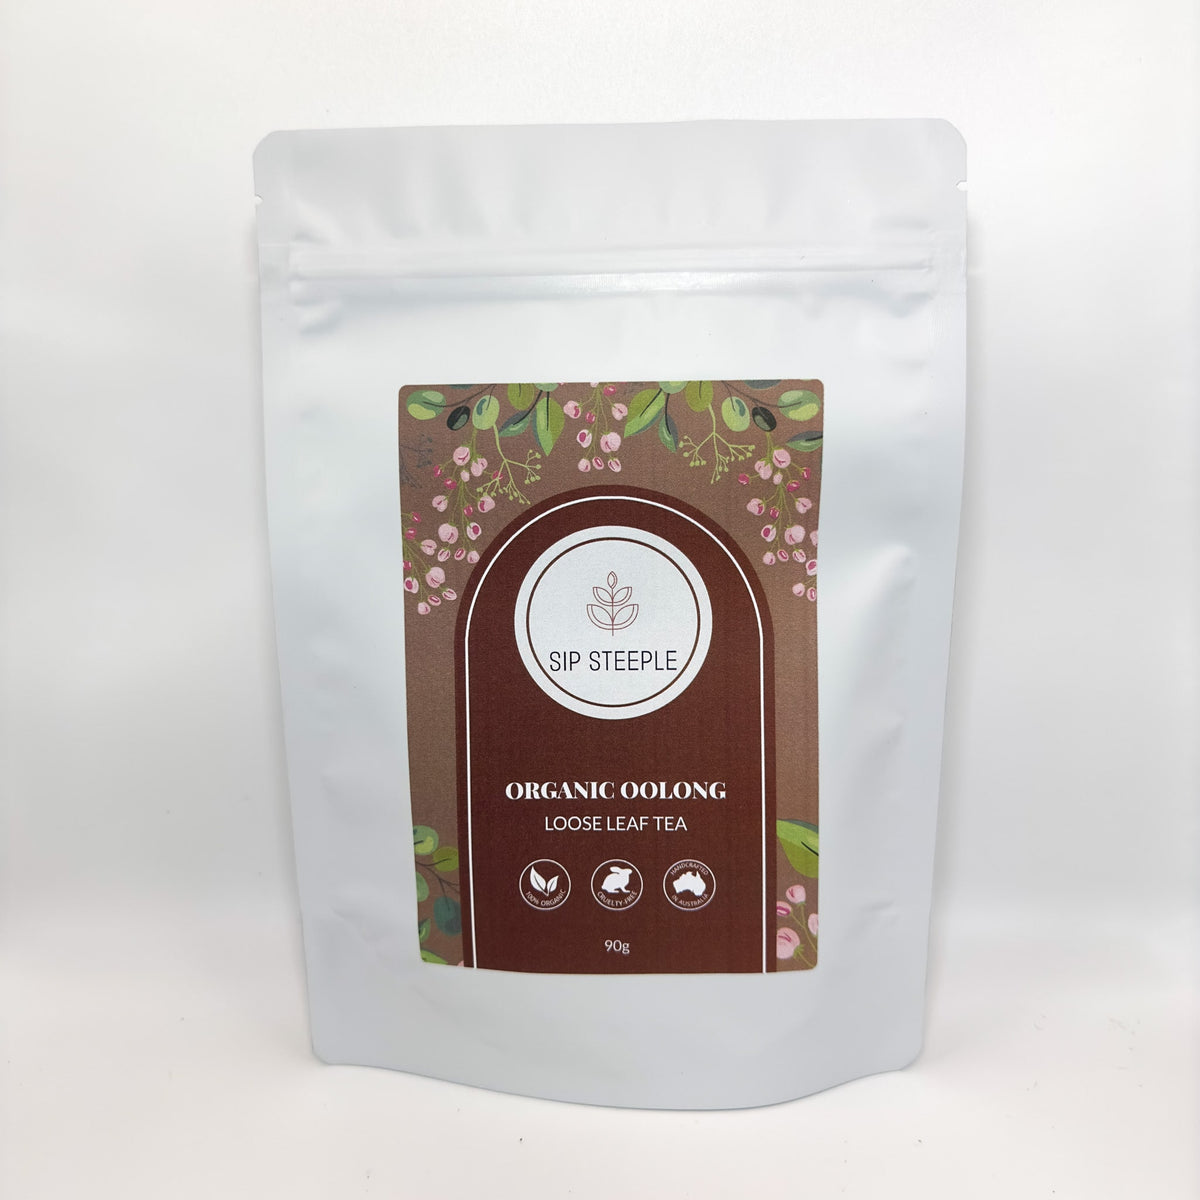 Sip Steeple Organic Oolong Tea Packaging